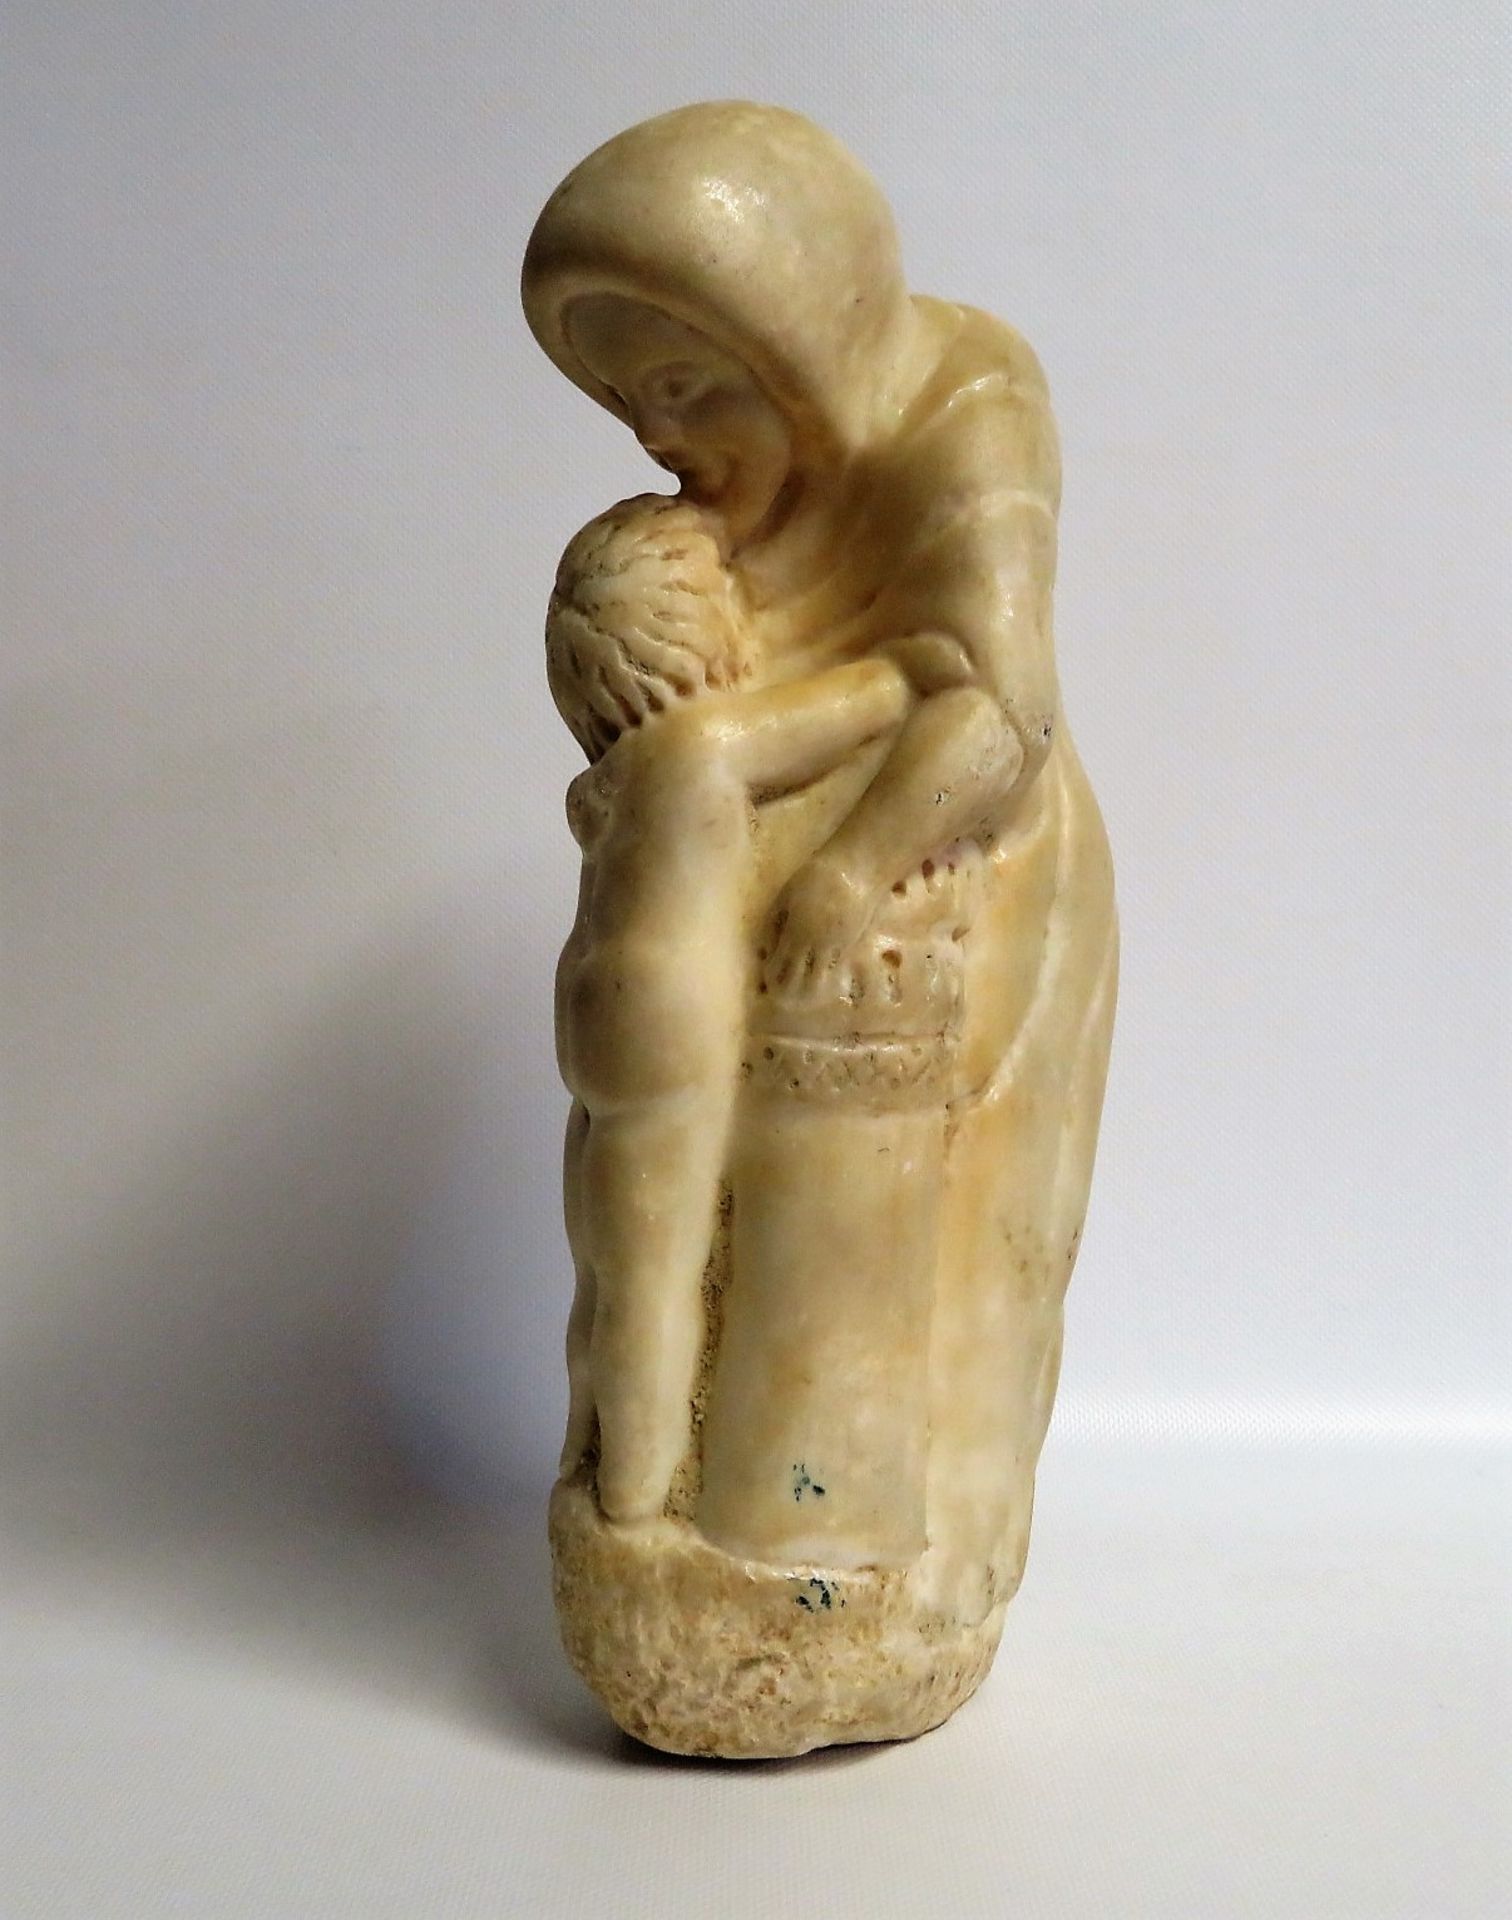 Unbekannt, Mutter mit Kind, 1. Hälfte 20. Jahrhundert, weißer Marmor, 33 x 7 x 15 cm. - Bild 2 aus 2